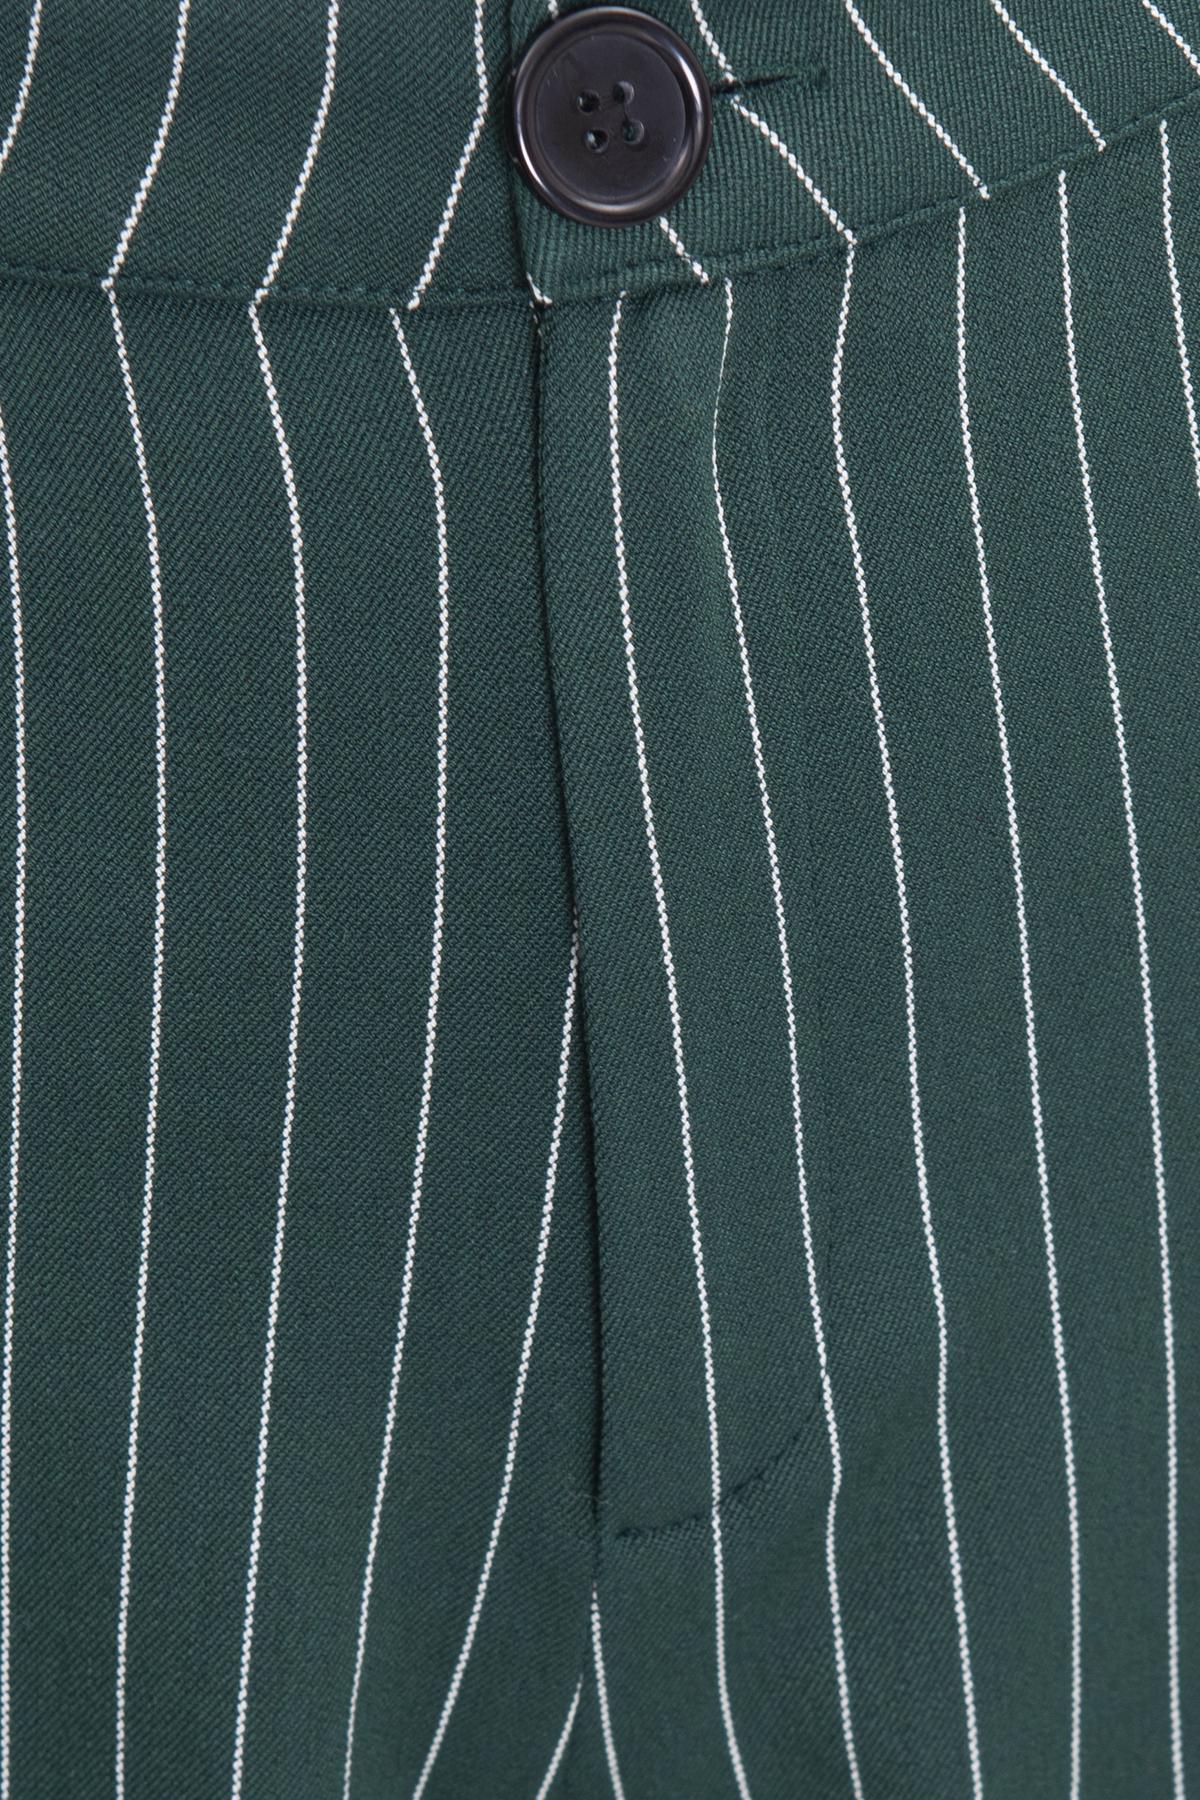 Bayan Yeşil Çizgili Yüksek Bel Klasik Pantolon